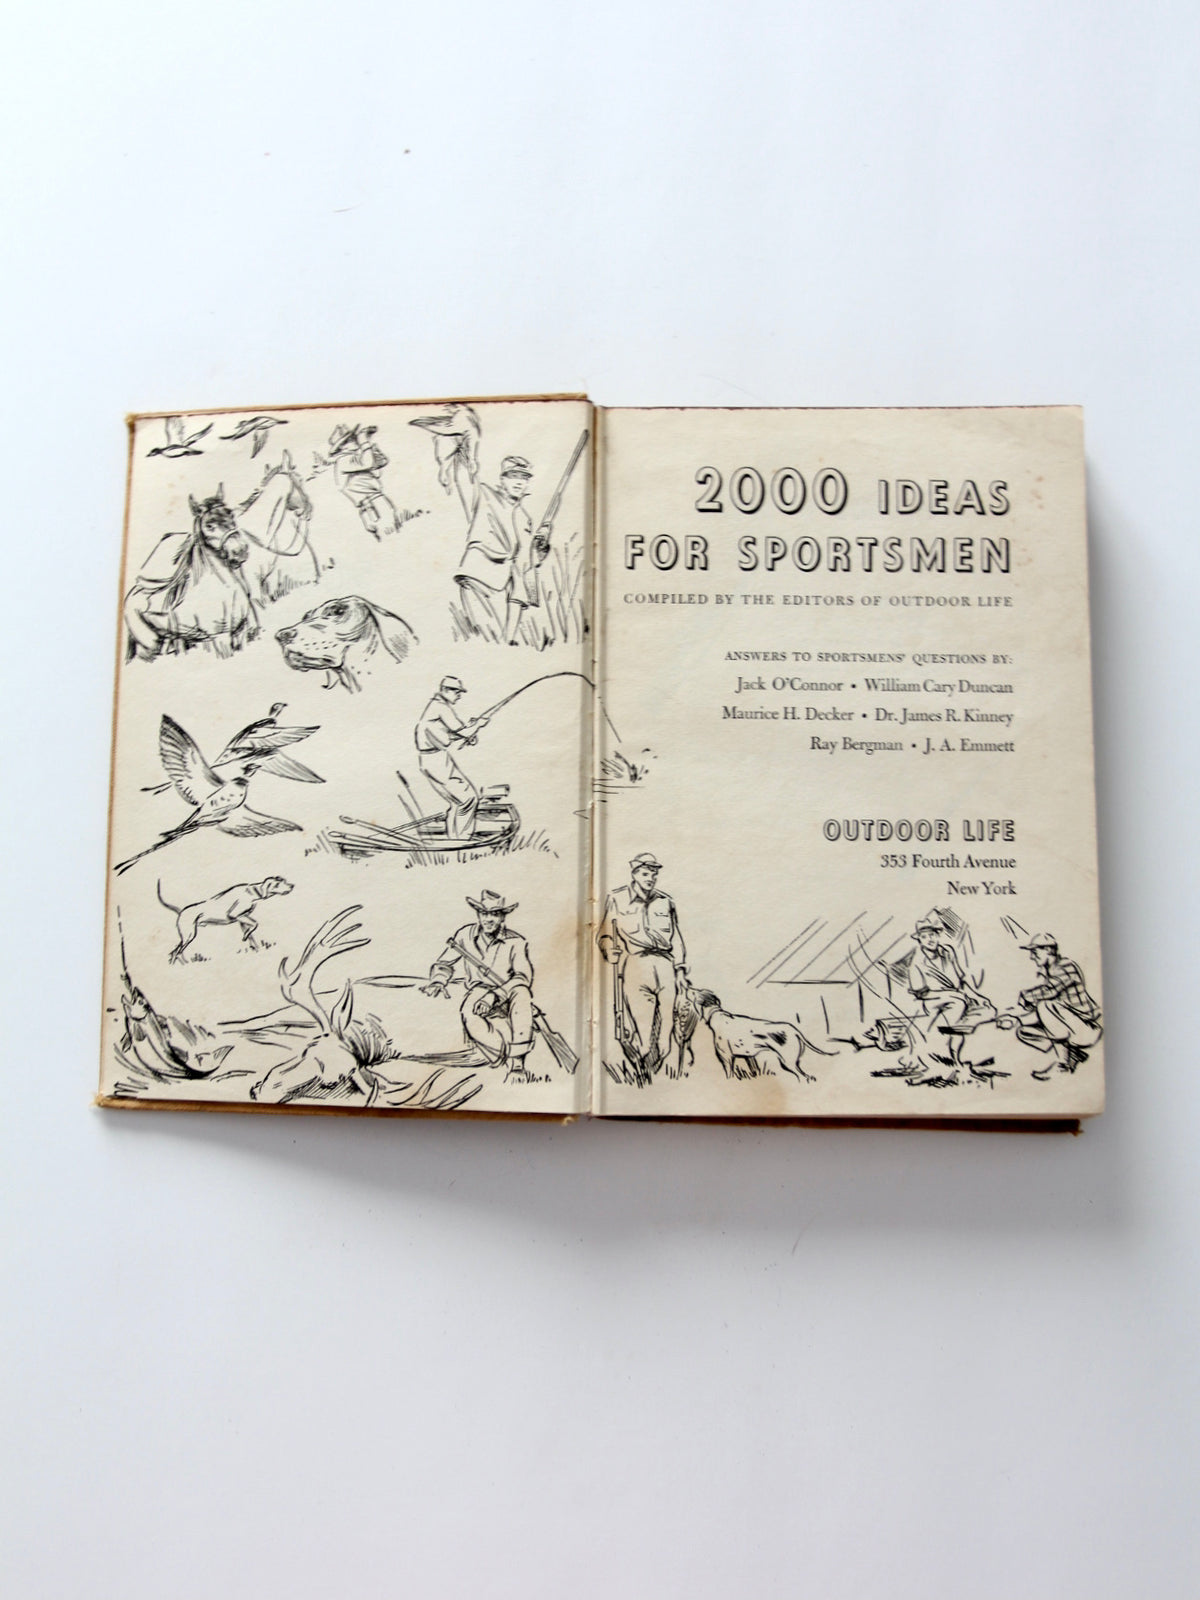 2000 Ideas for Sportsmen, 1947